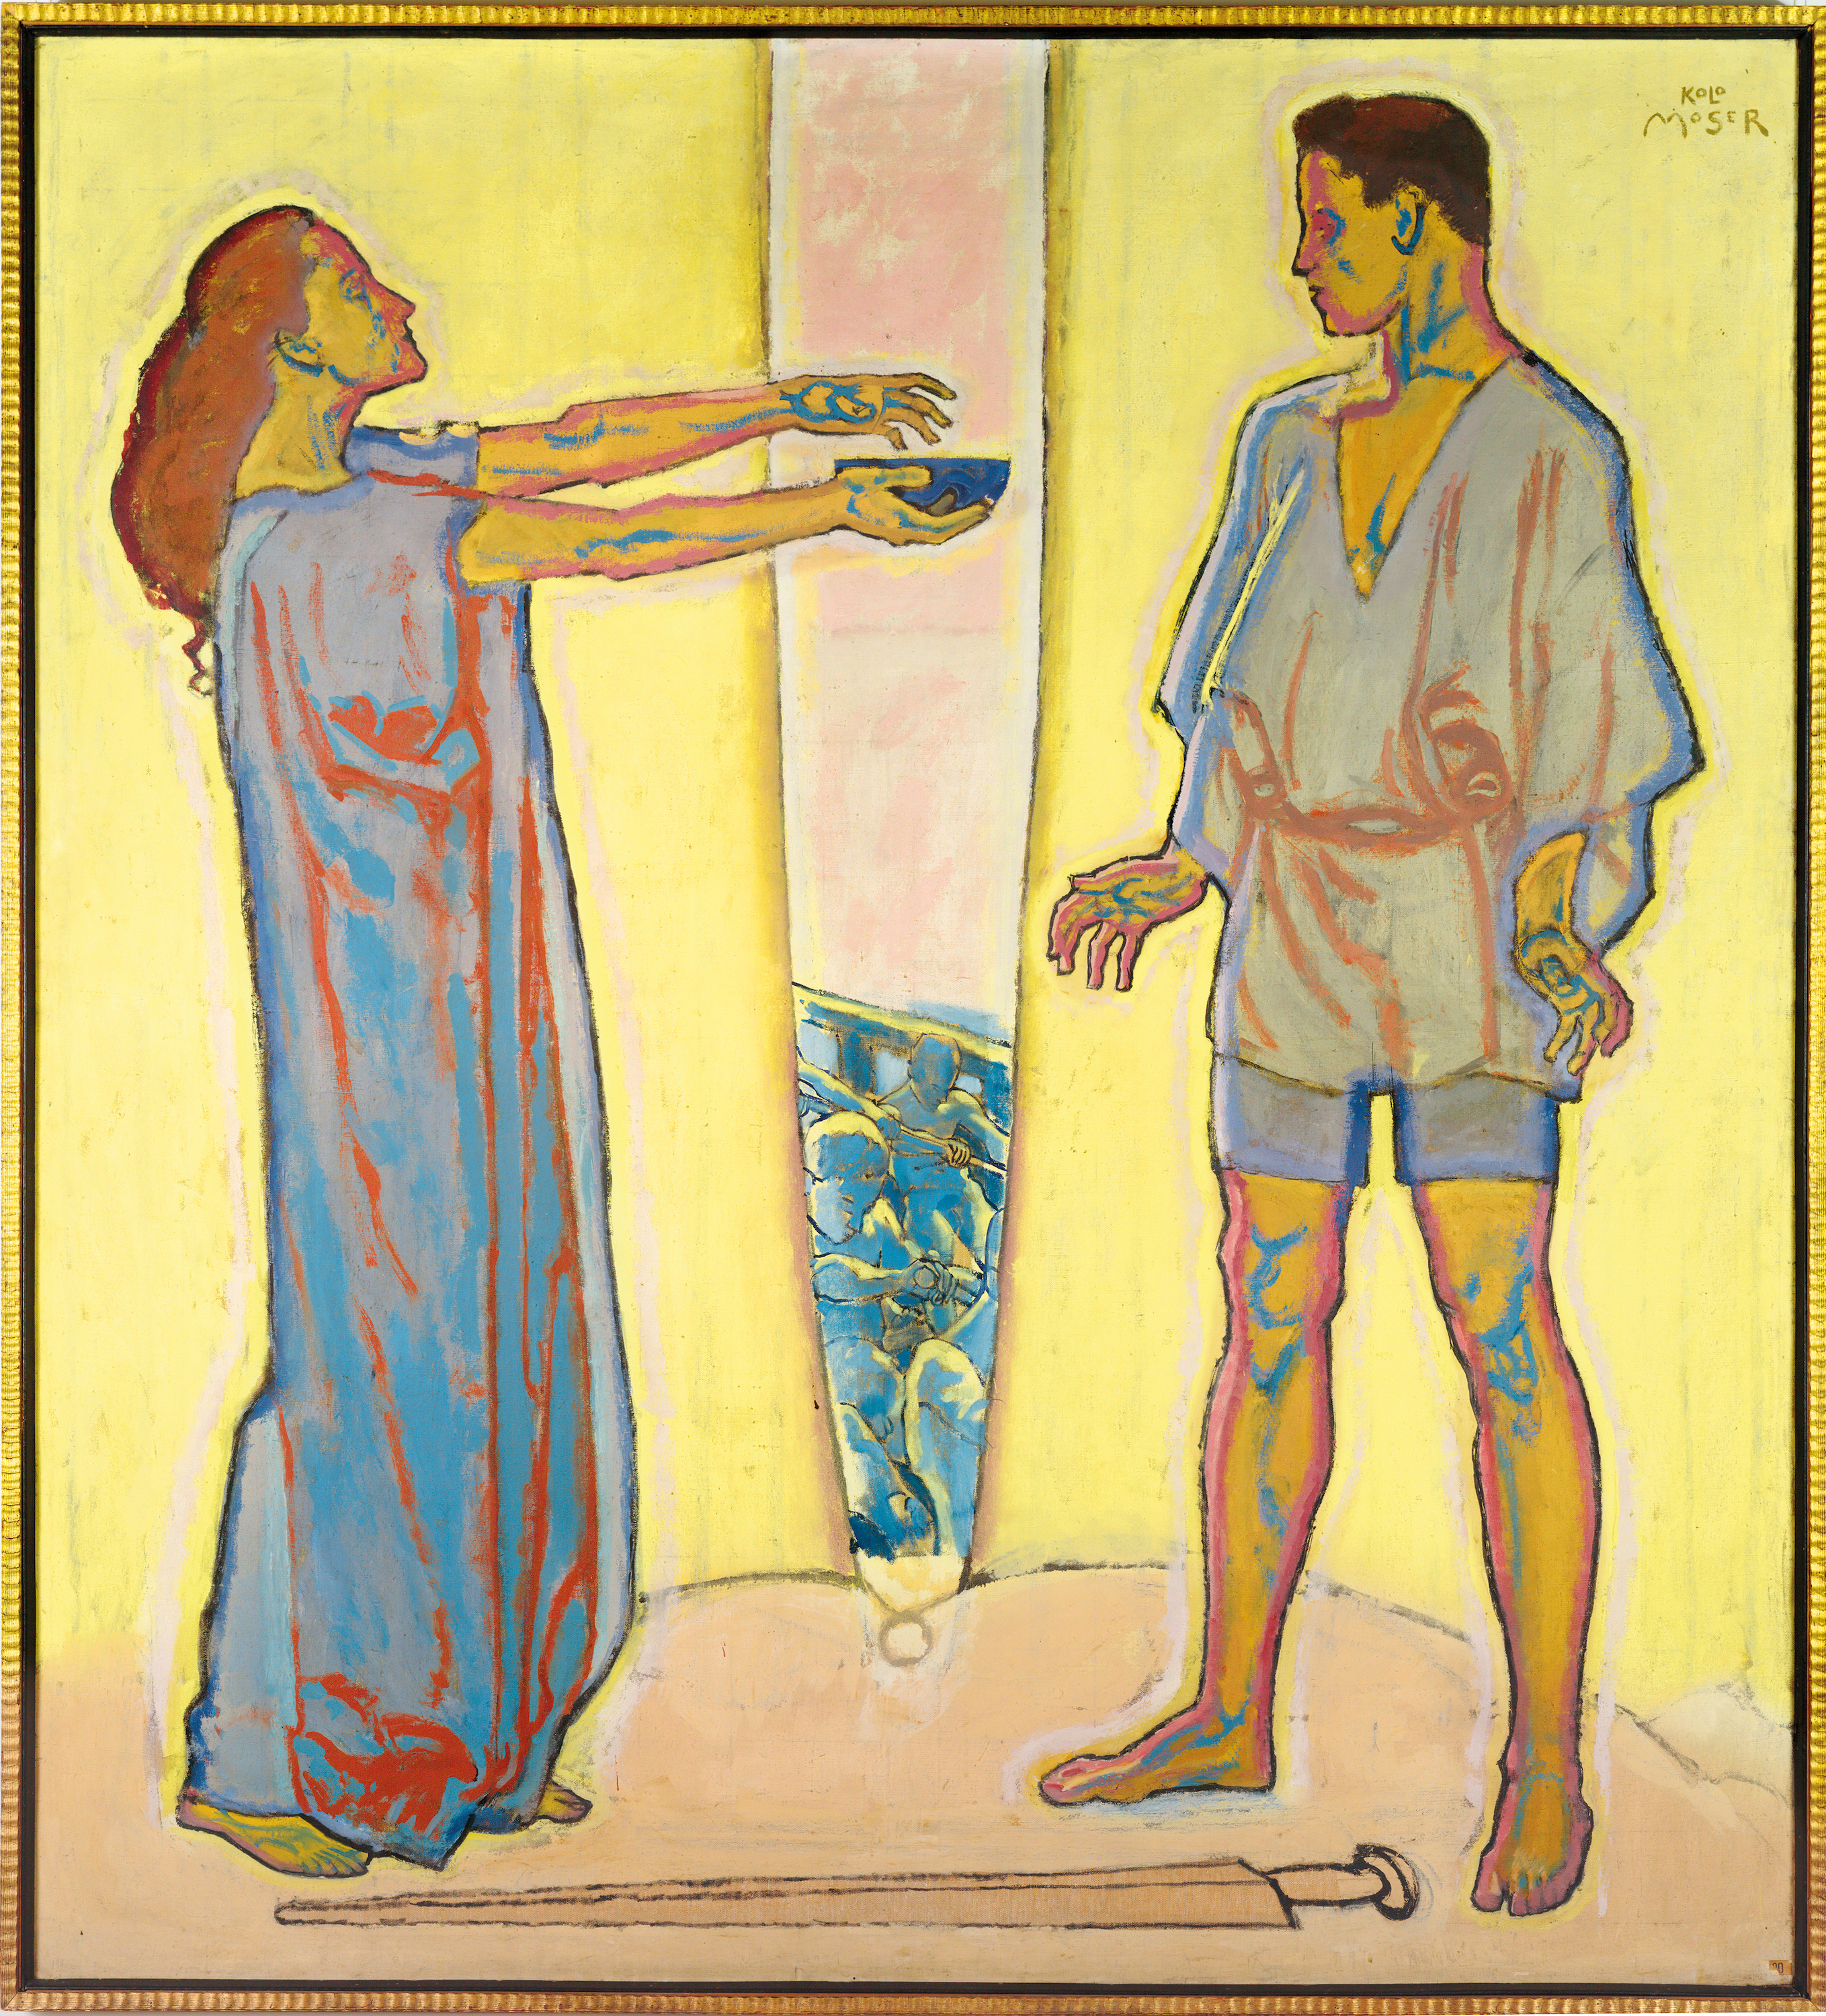 Napój miłosny (Tristan i Izolda) by Koloman Moser - 1913 - 195 x 210 cm 